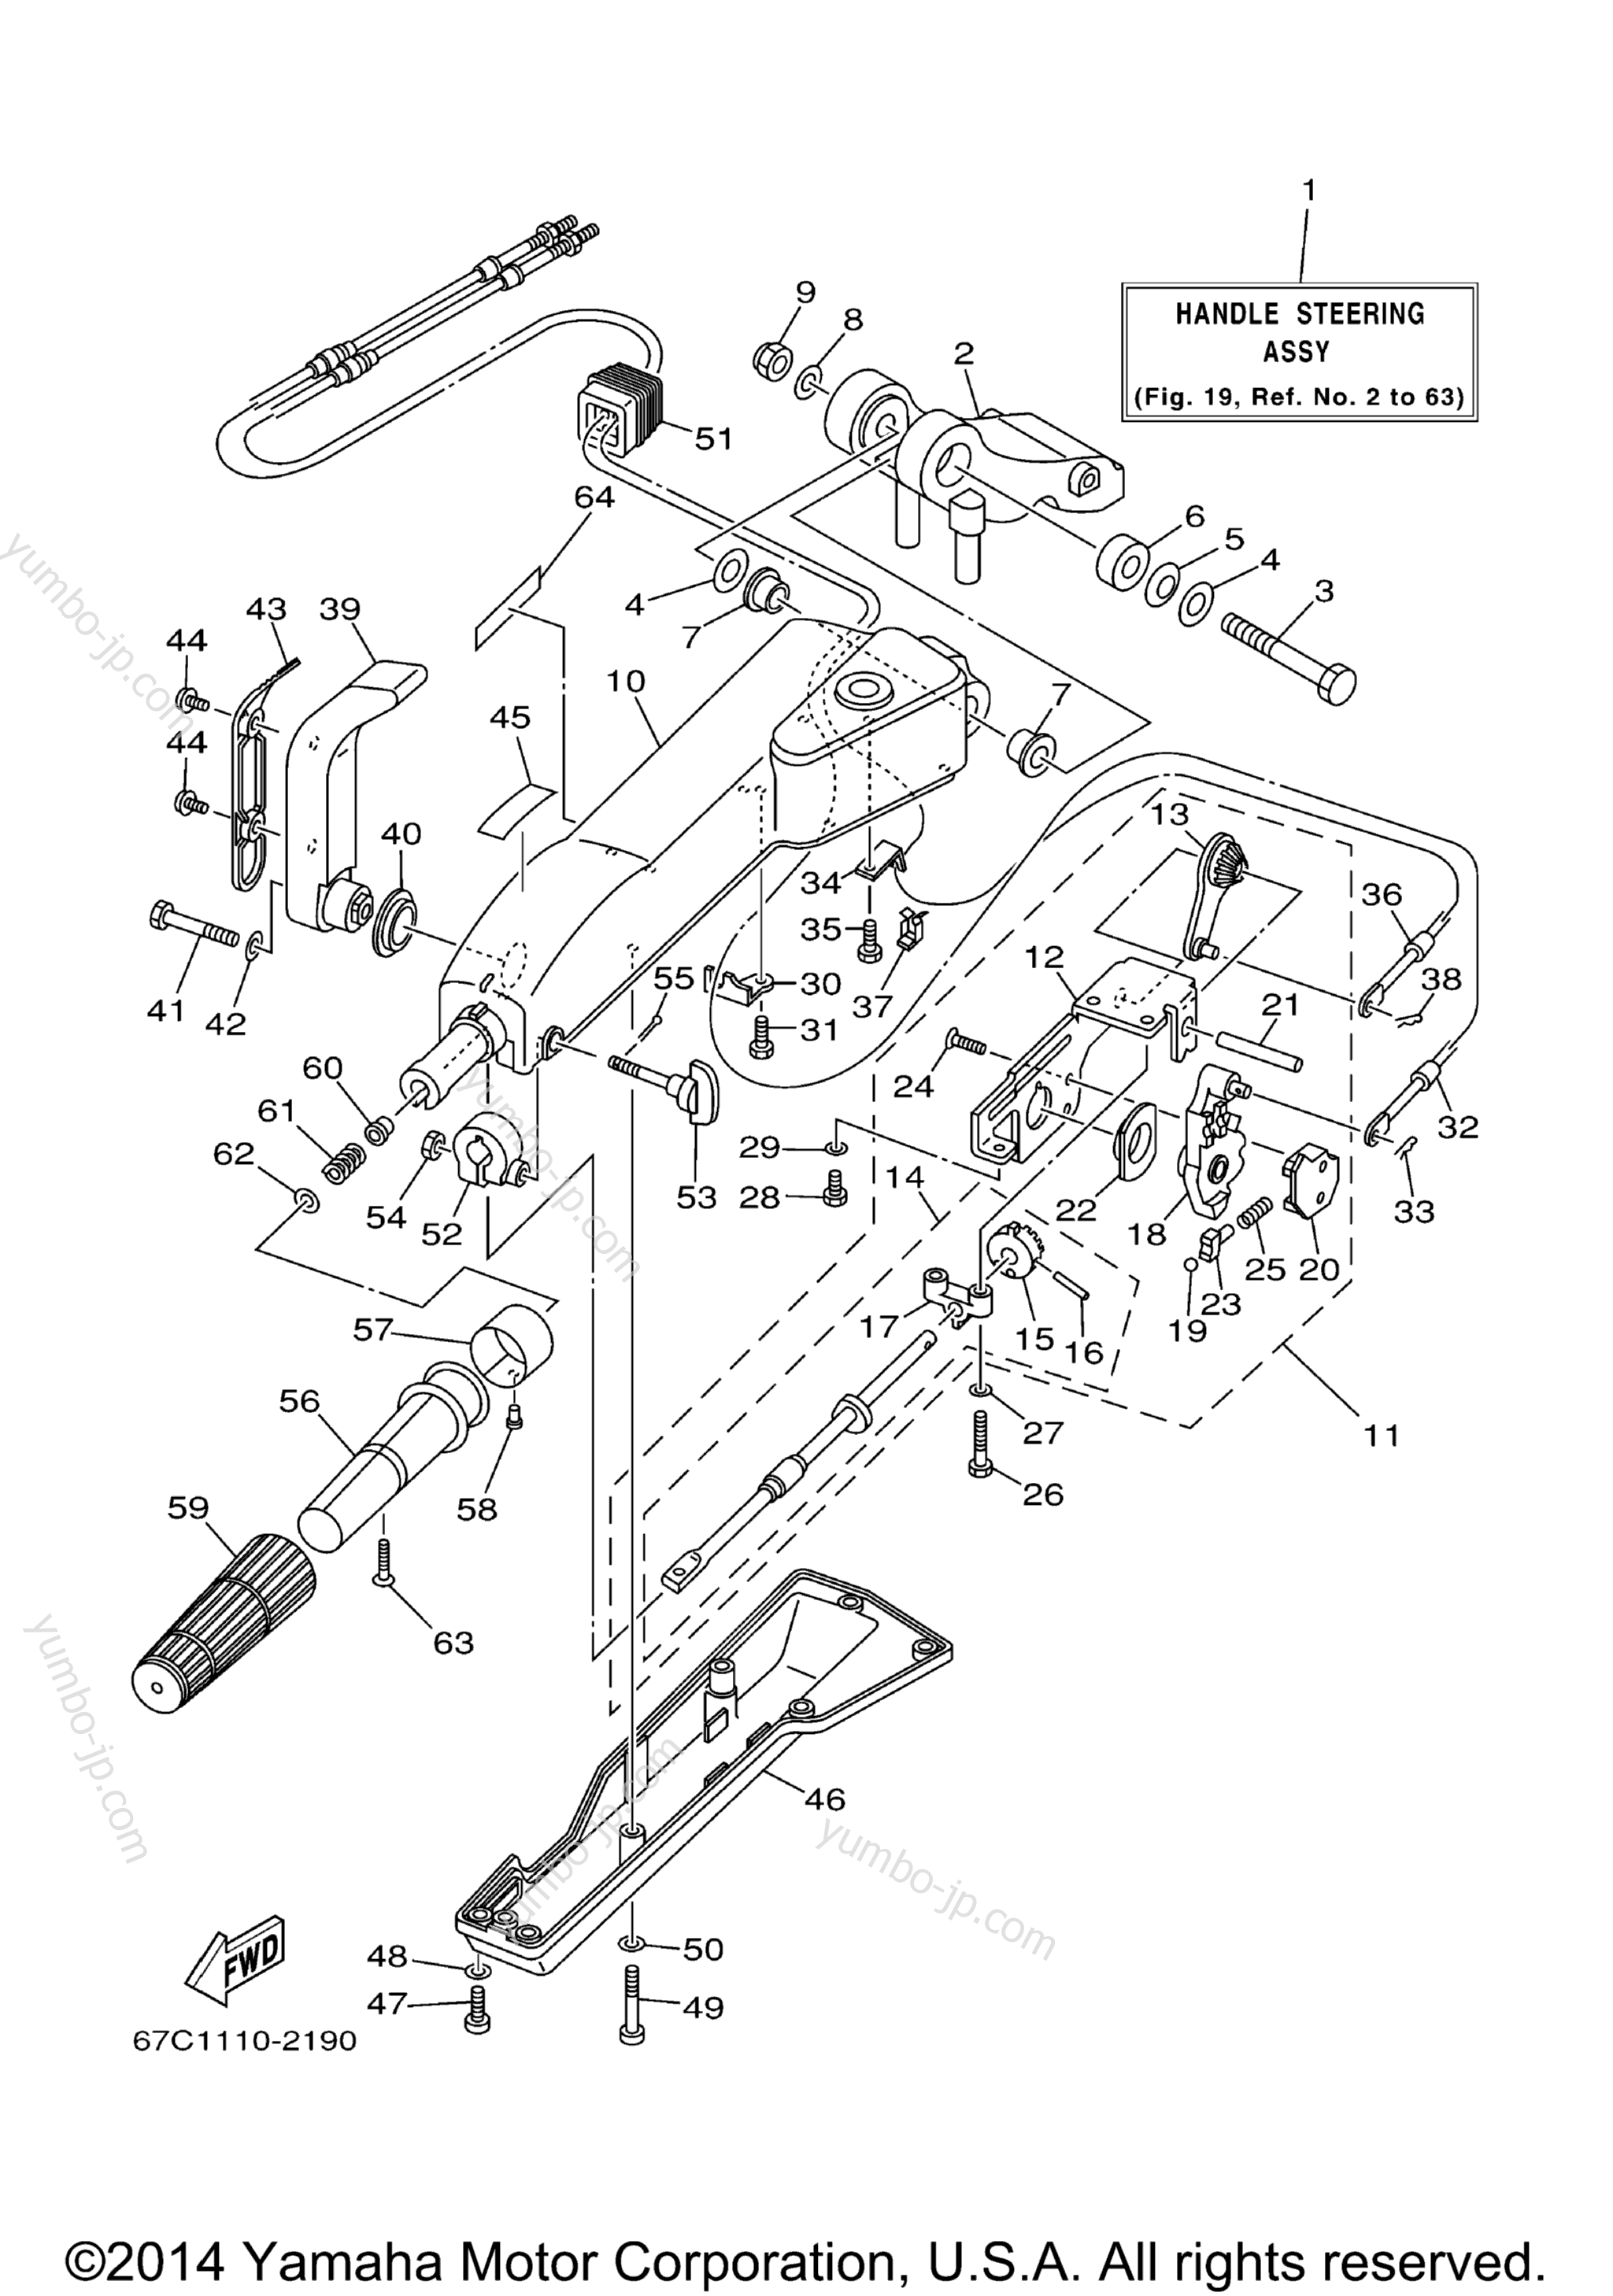 Steering Mh для лодочных моторов YAMAHA F40MSHB_MLHB_MJHB_EJRB_ESRB_TLRB (F40TLRB) 2003 г.